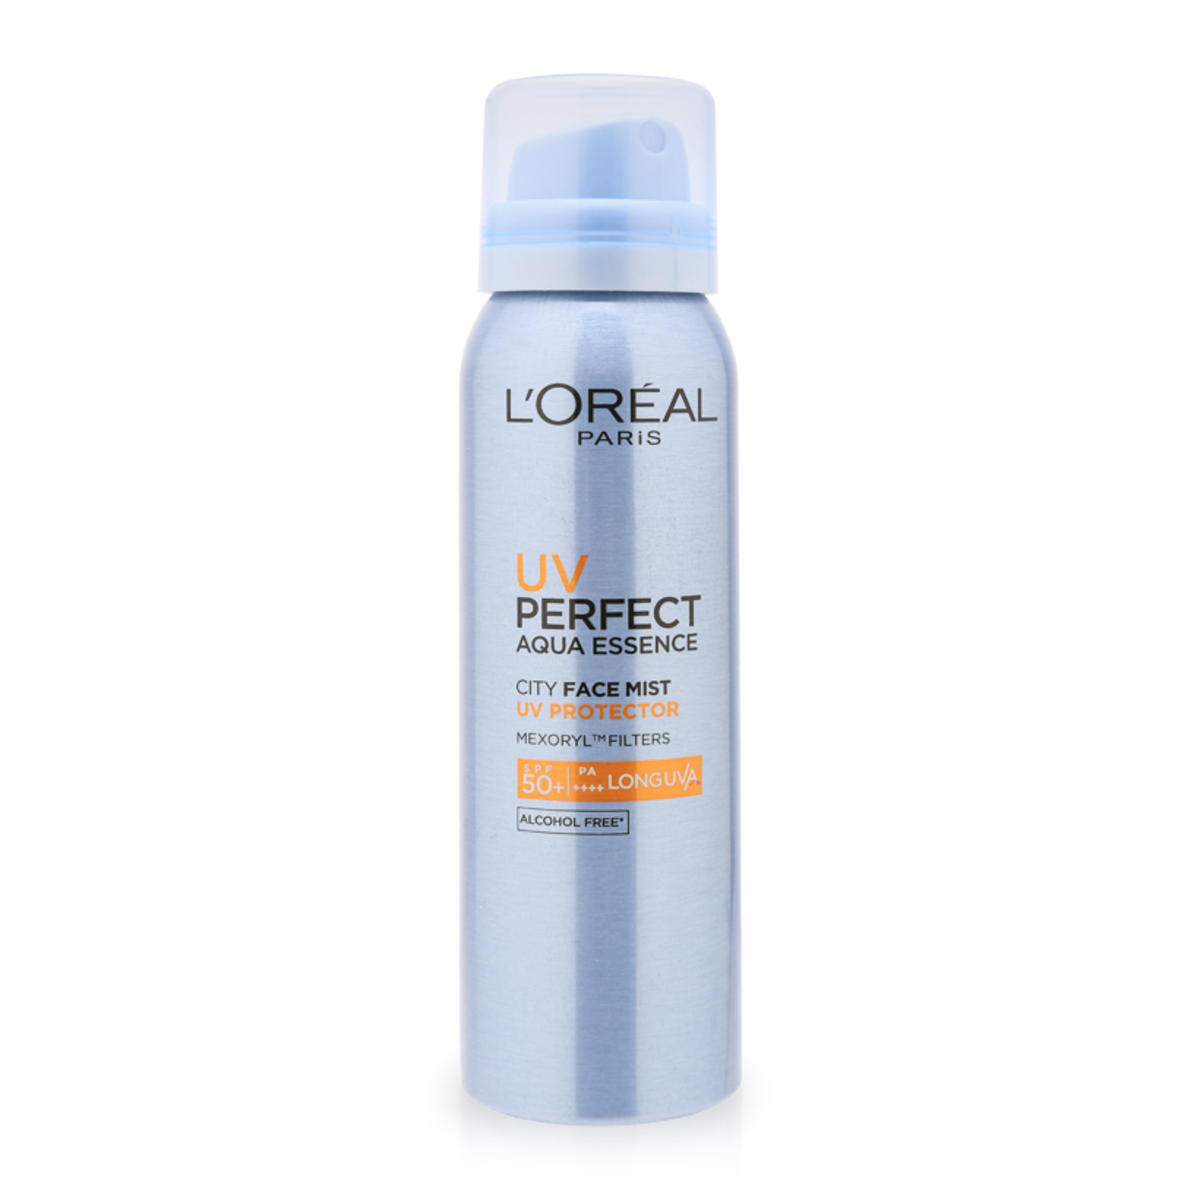 Xịt chống nắng tăng cường bảo vệ da L'Oreal UV Perfect Aqua Essence City Face Mist SPF50+/PA++++ 64g